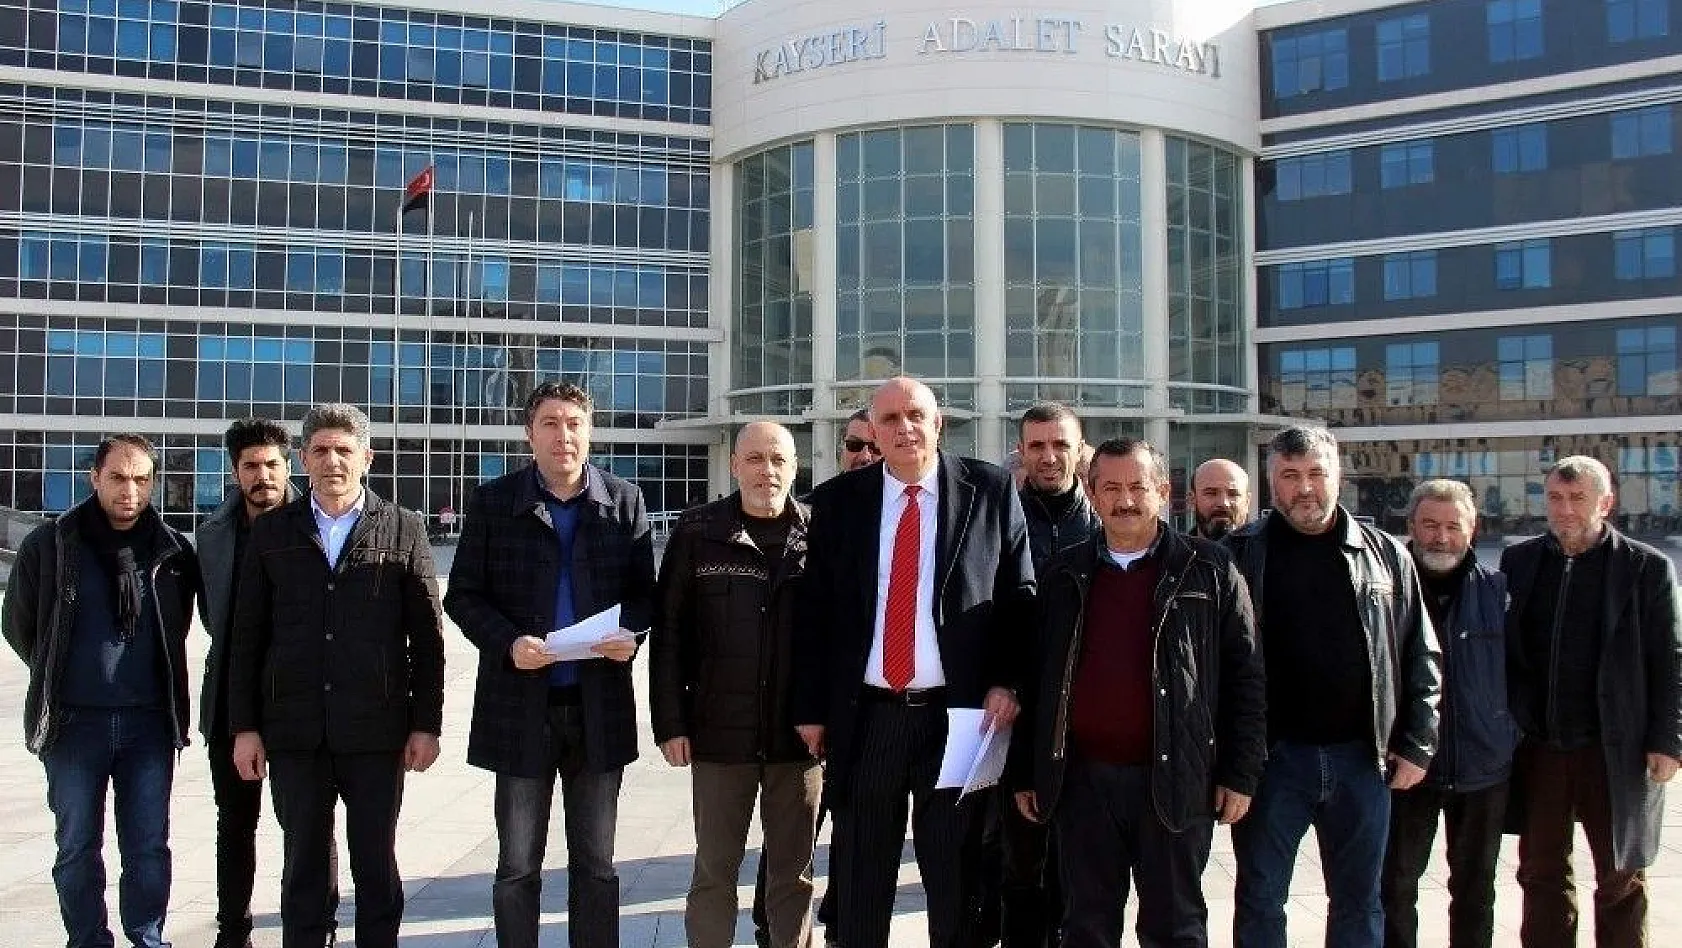 Kayseri'de Kılıçdaroğlu hakkında suç duyurusu